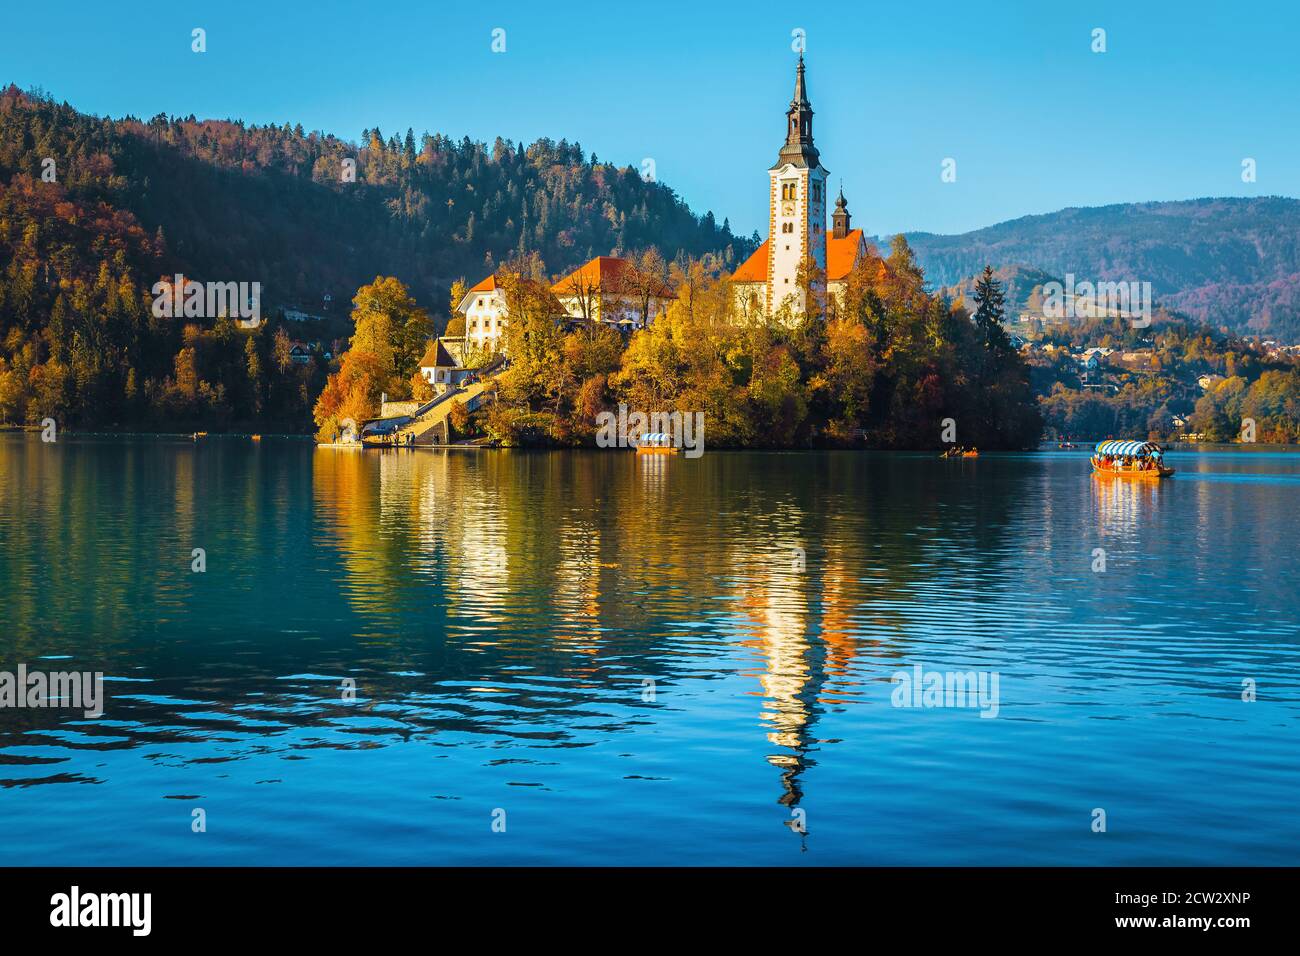 Beliebtes Reise- und Ausflugsziel im Herbst. Erstaunlicher See Bled mit malerischer Wallfahrtskirche auf der kleinen Insel, Bled, Slowenien, Europa Stockfoto